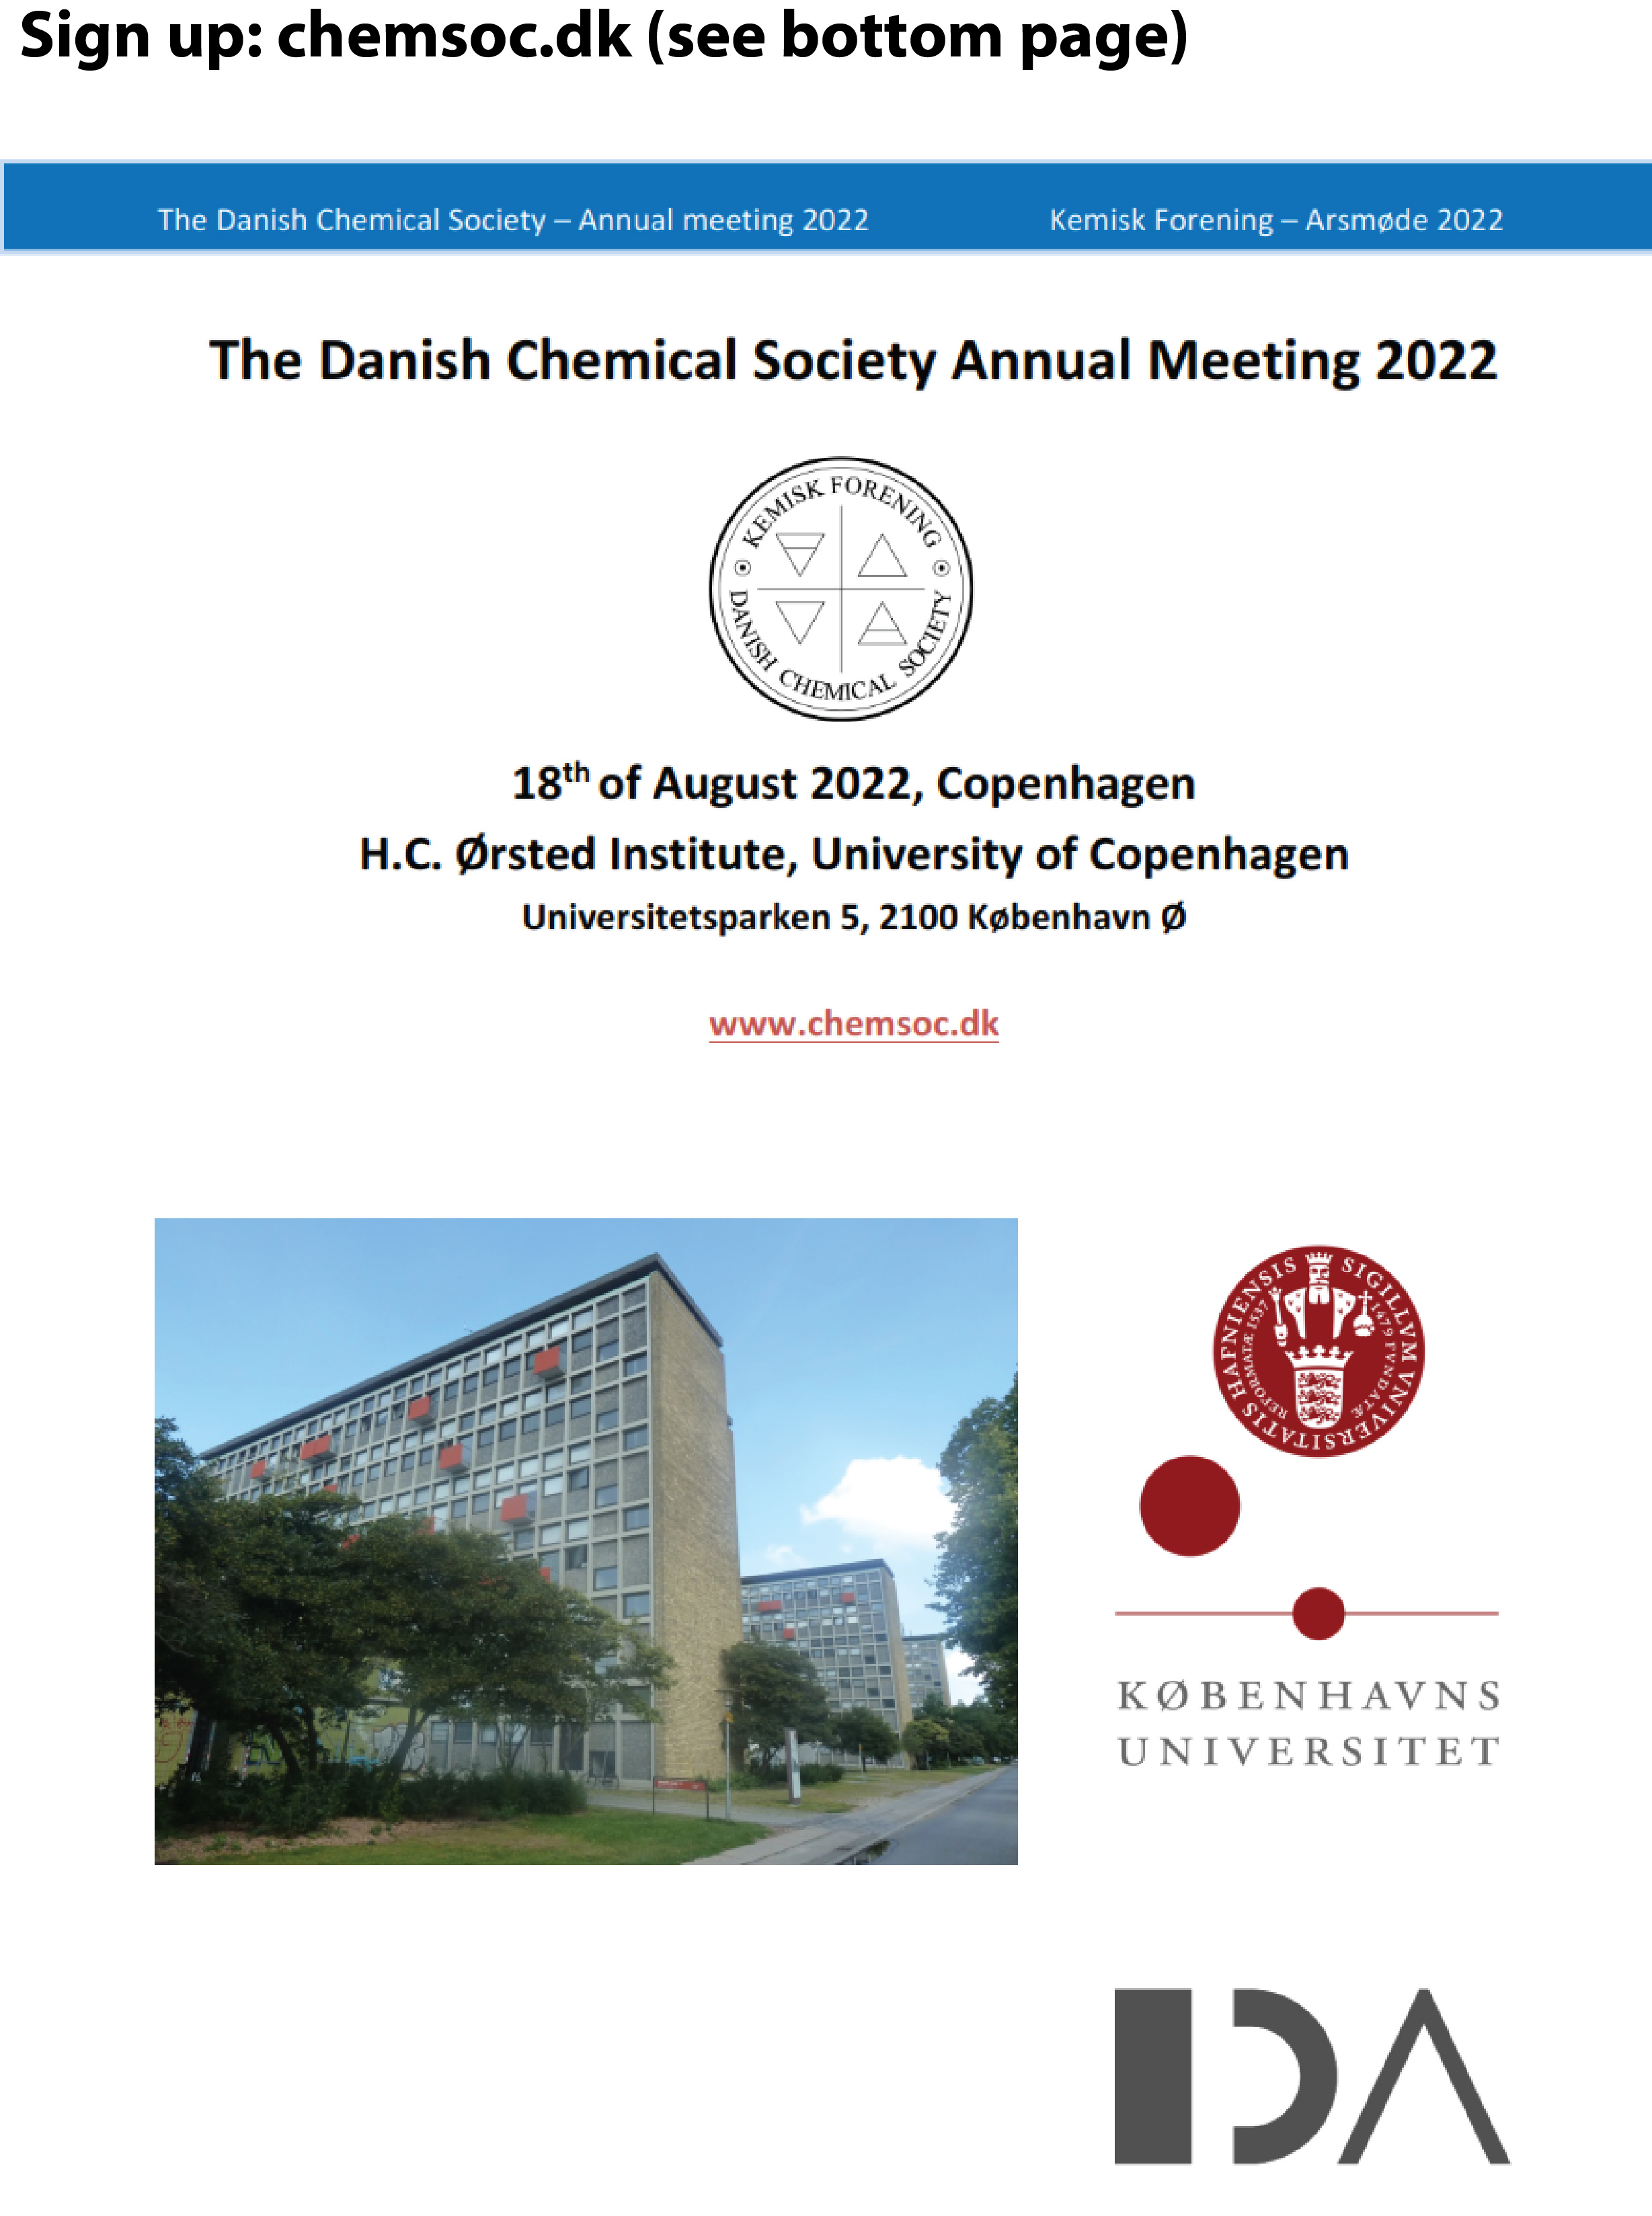 Kemisk Forenings Årsmøde 2022 / Annual meeting of The Danish Chemical Society